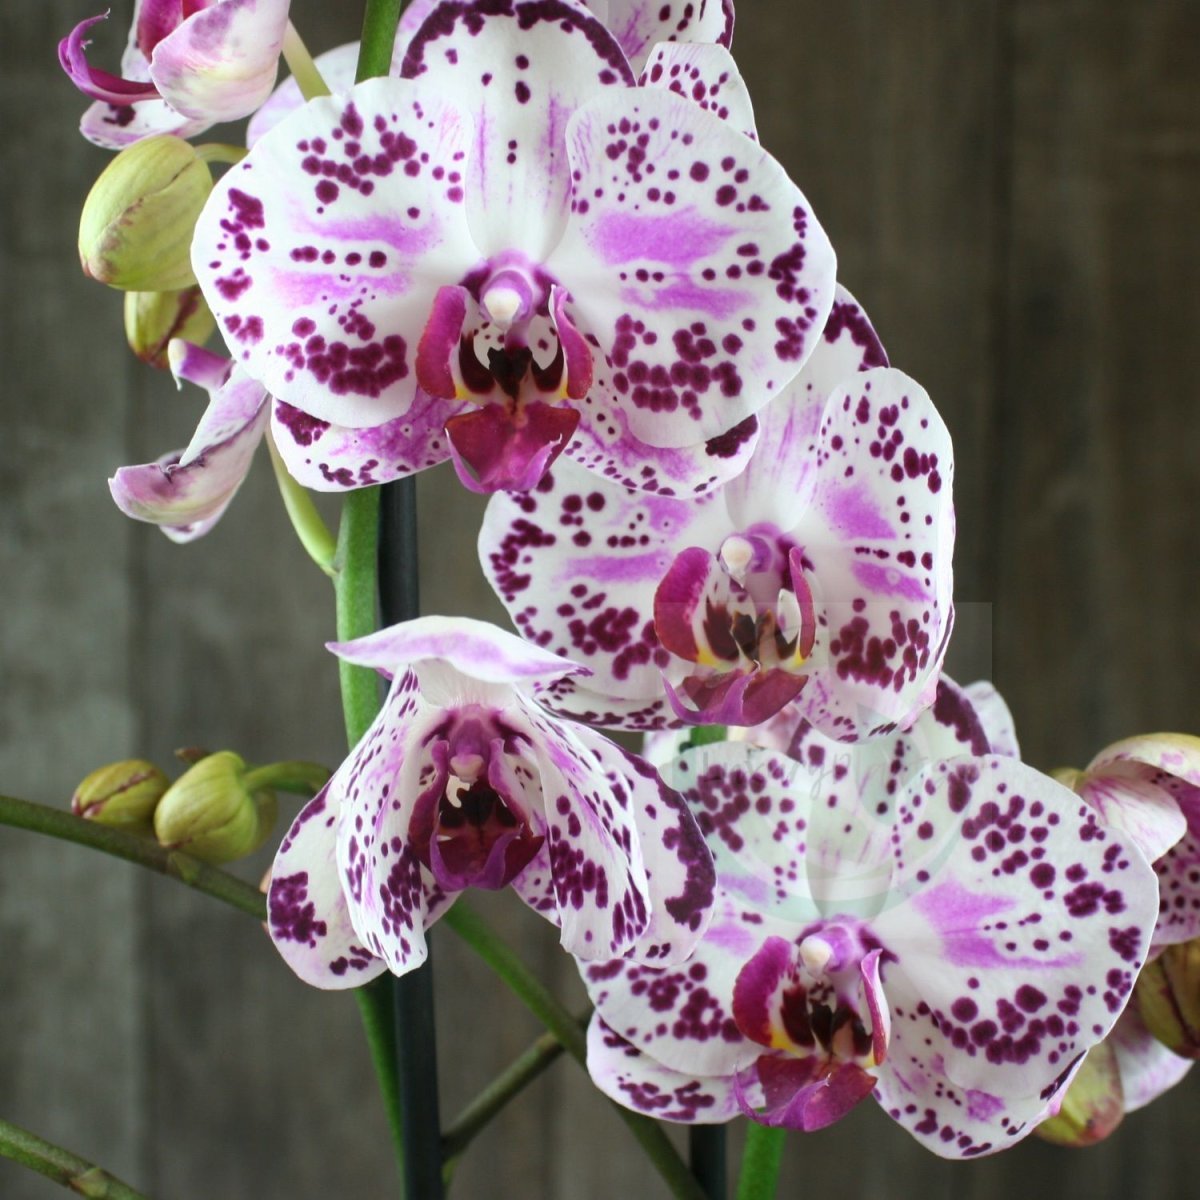 candela орхидея фото